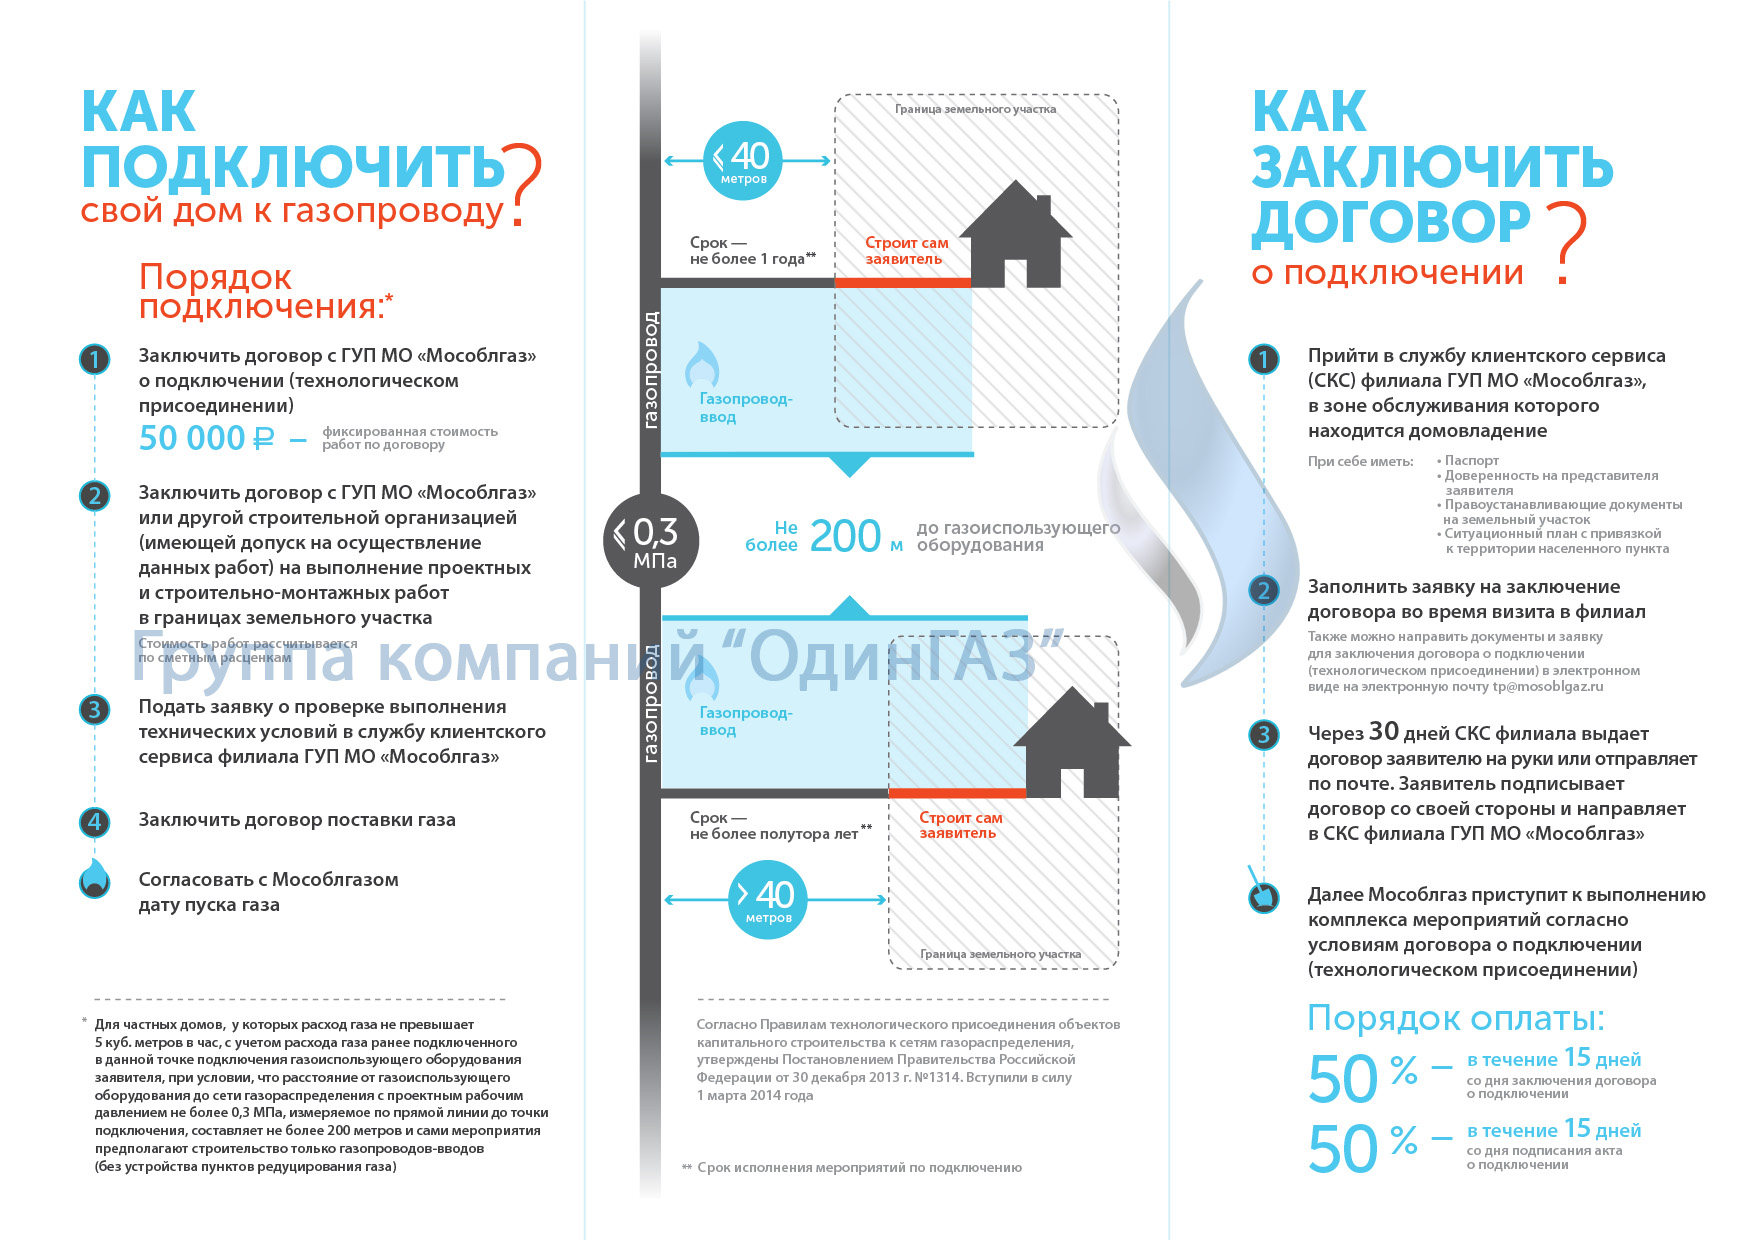 Новый закон о газификации с 1 марта 2014 г. в Московской области